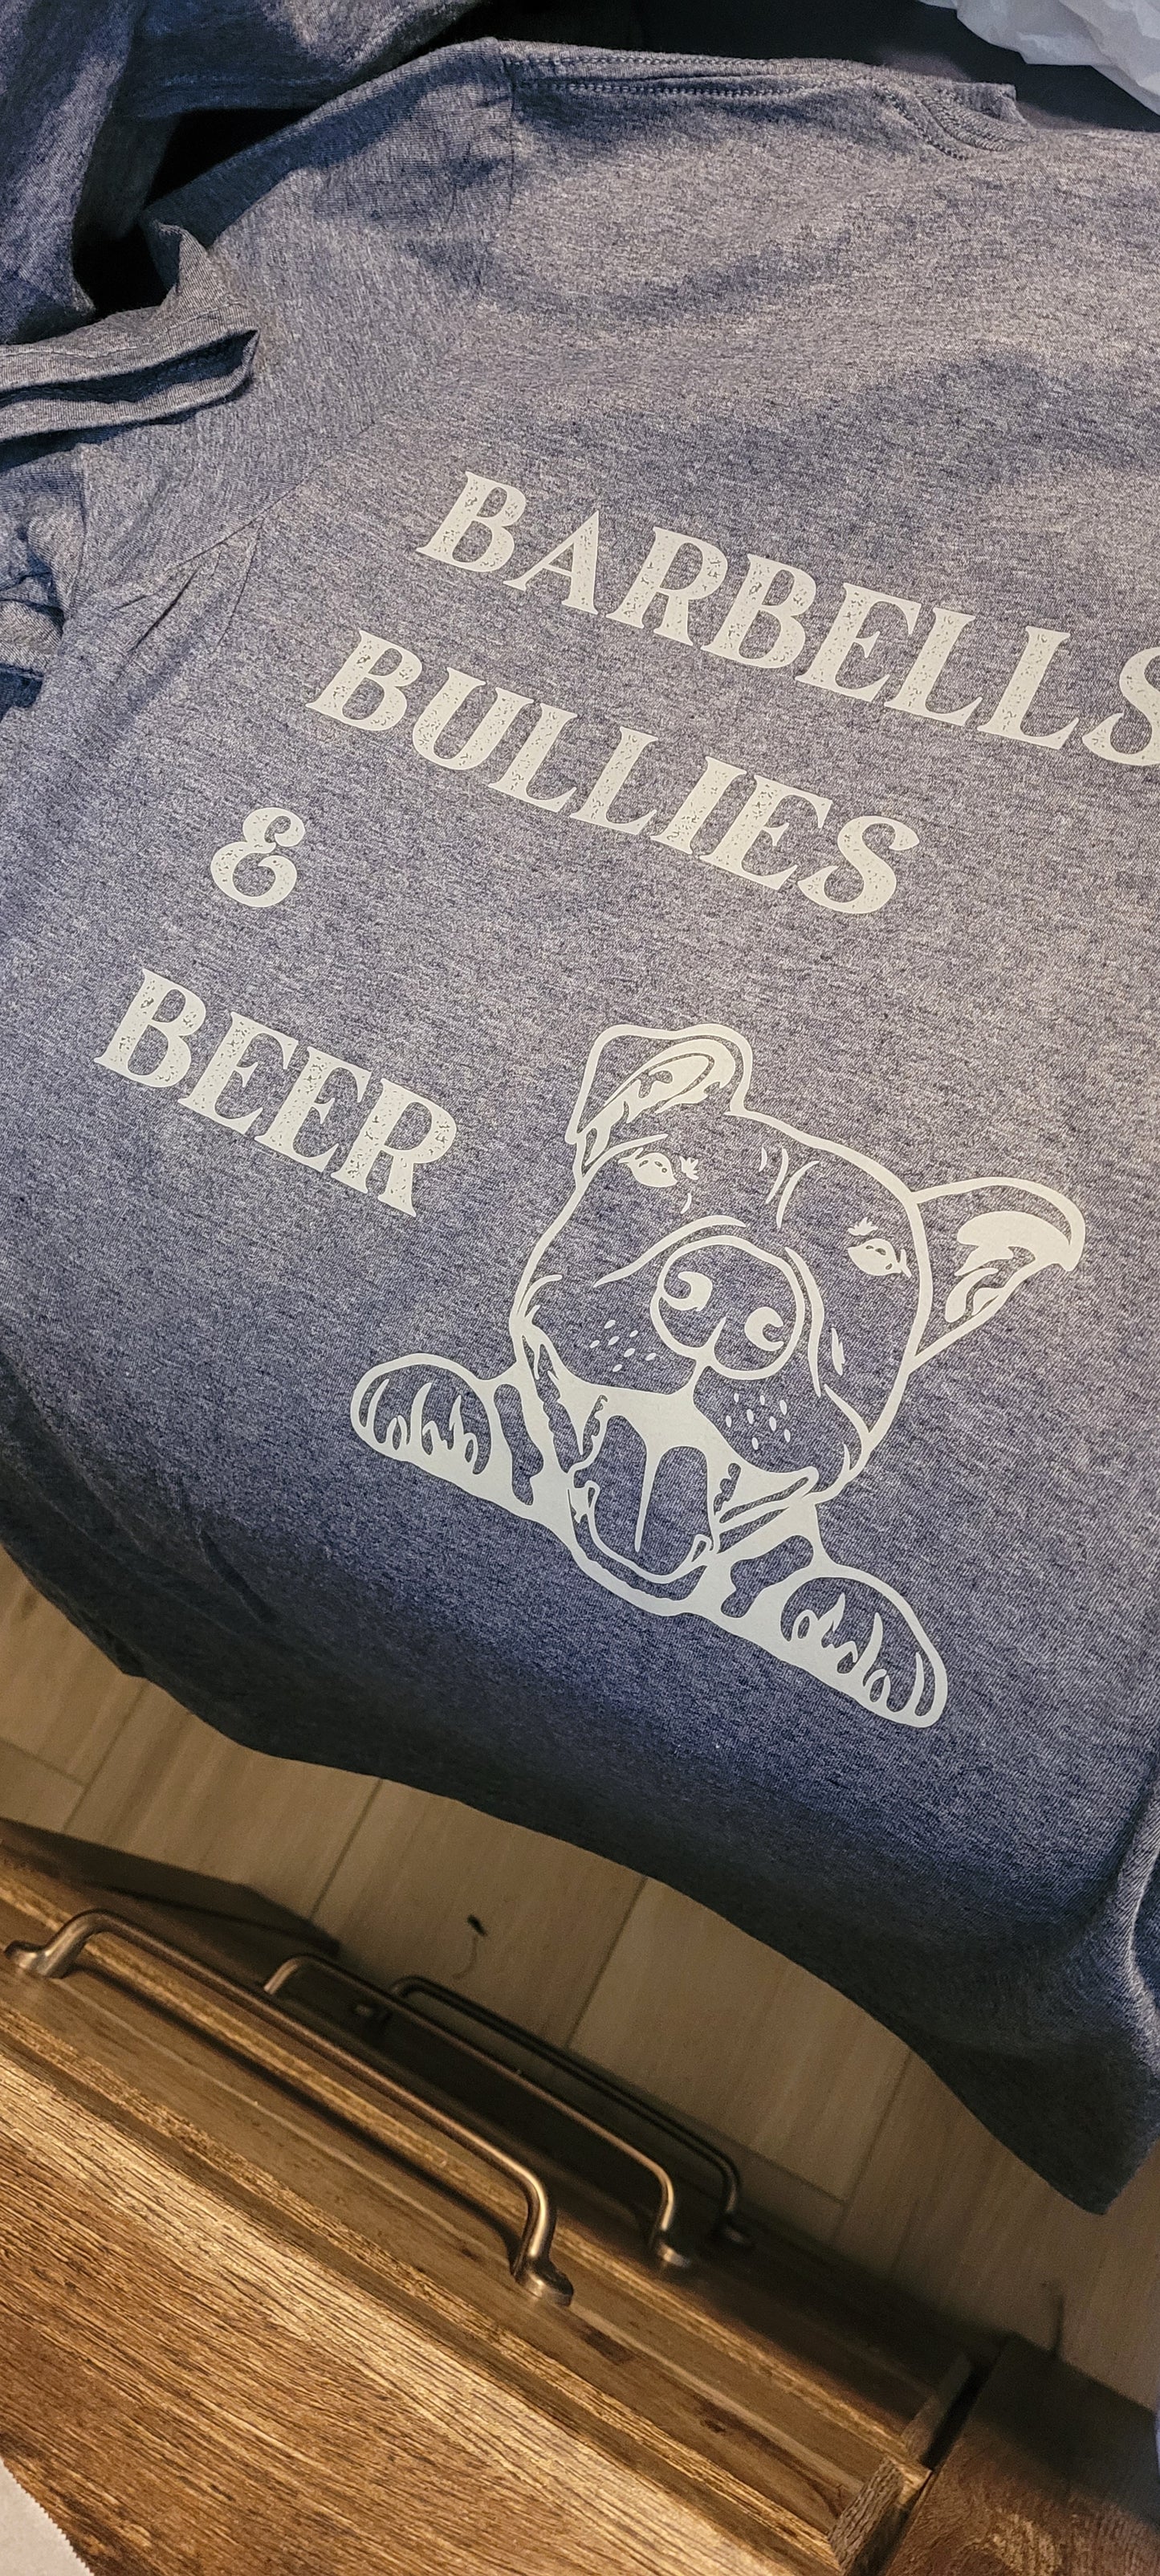 Barbells Bullies & Beer Tee